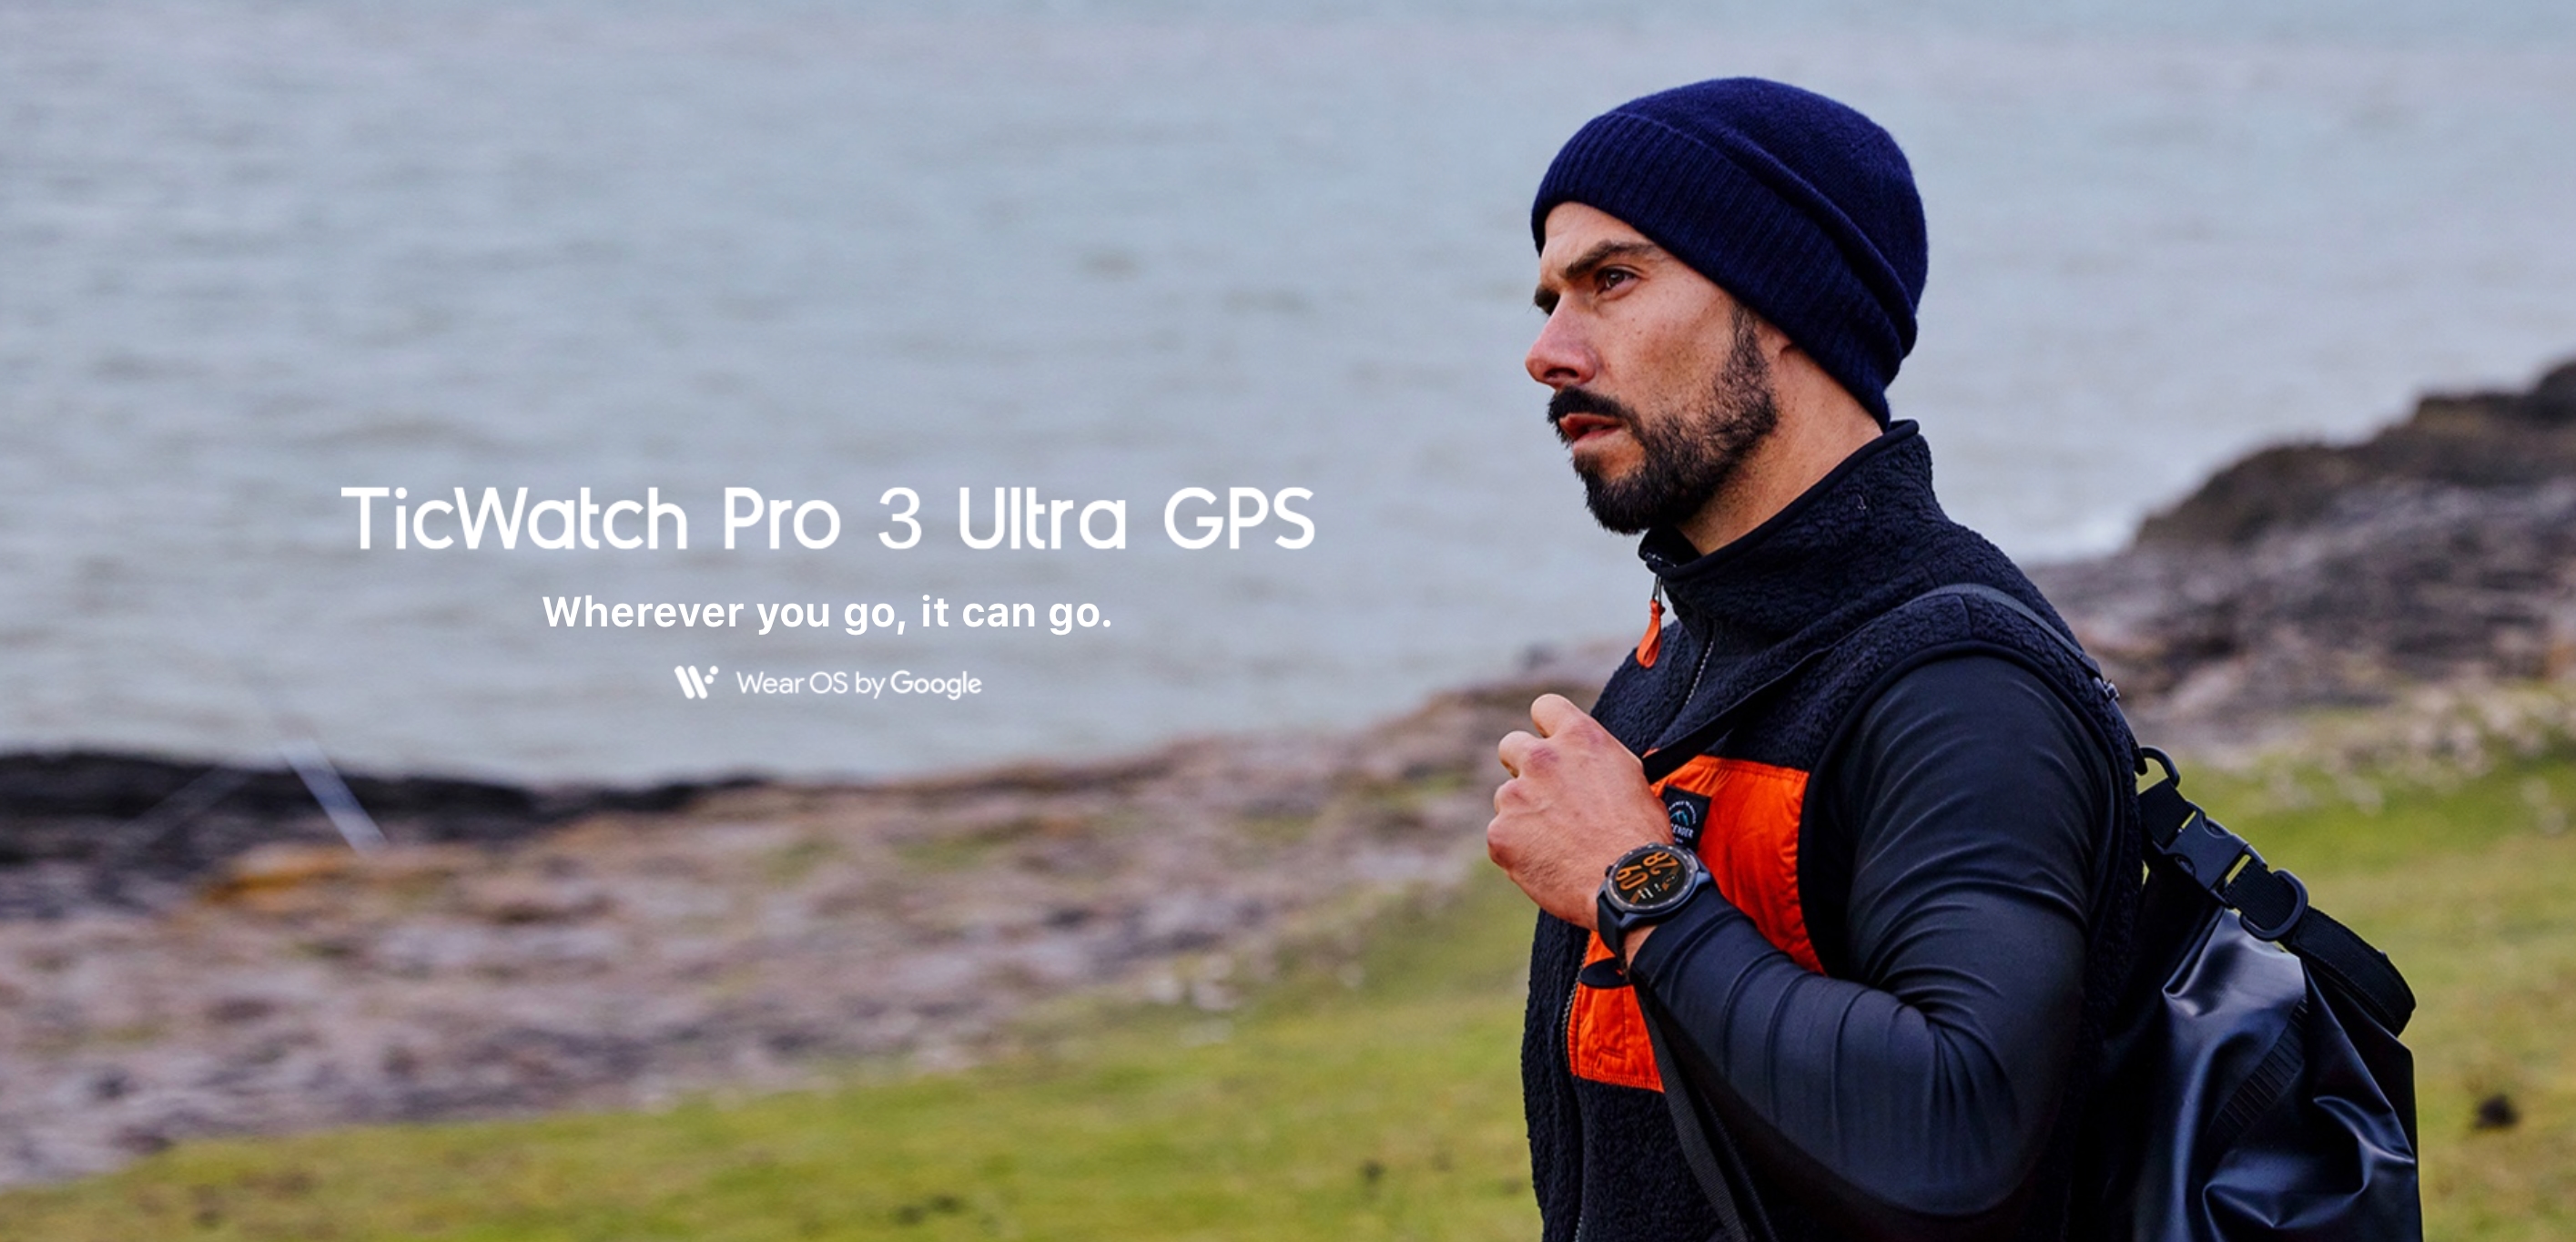 Mobvoi TicWatch Pro 3 Ultra GPS: смарт-годинник на Wear OS із подвійним екраном, чіпом Snapdragon Wear 4100 та автономністю до 45 днів за $299